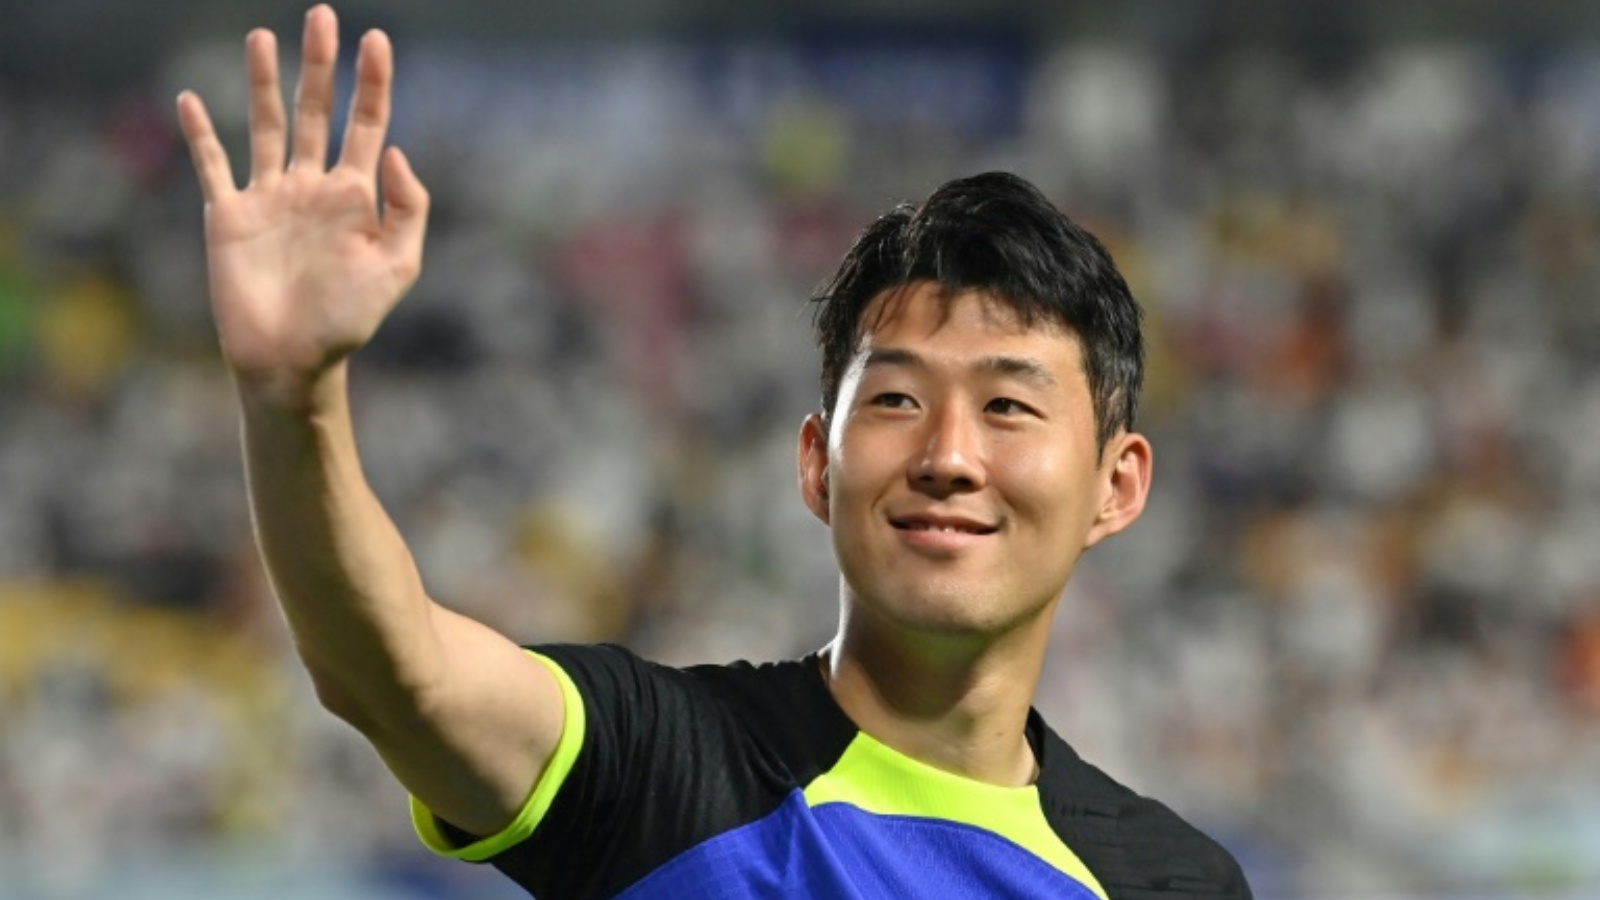 لم يسجل الكوري الجنوبي سون هيونغ-مين أي هدف بعد 7 مباريات خاضها مع توتنهام الانكليزي في بداية الموسم الجديد